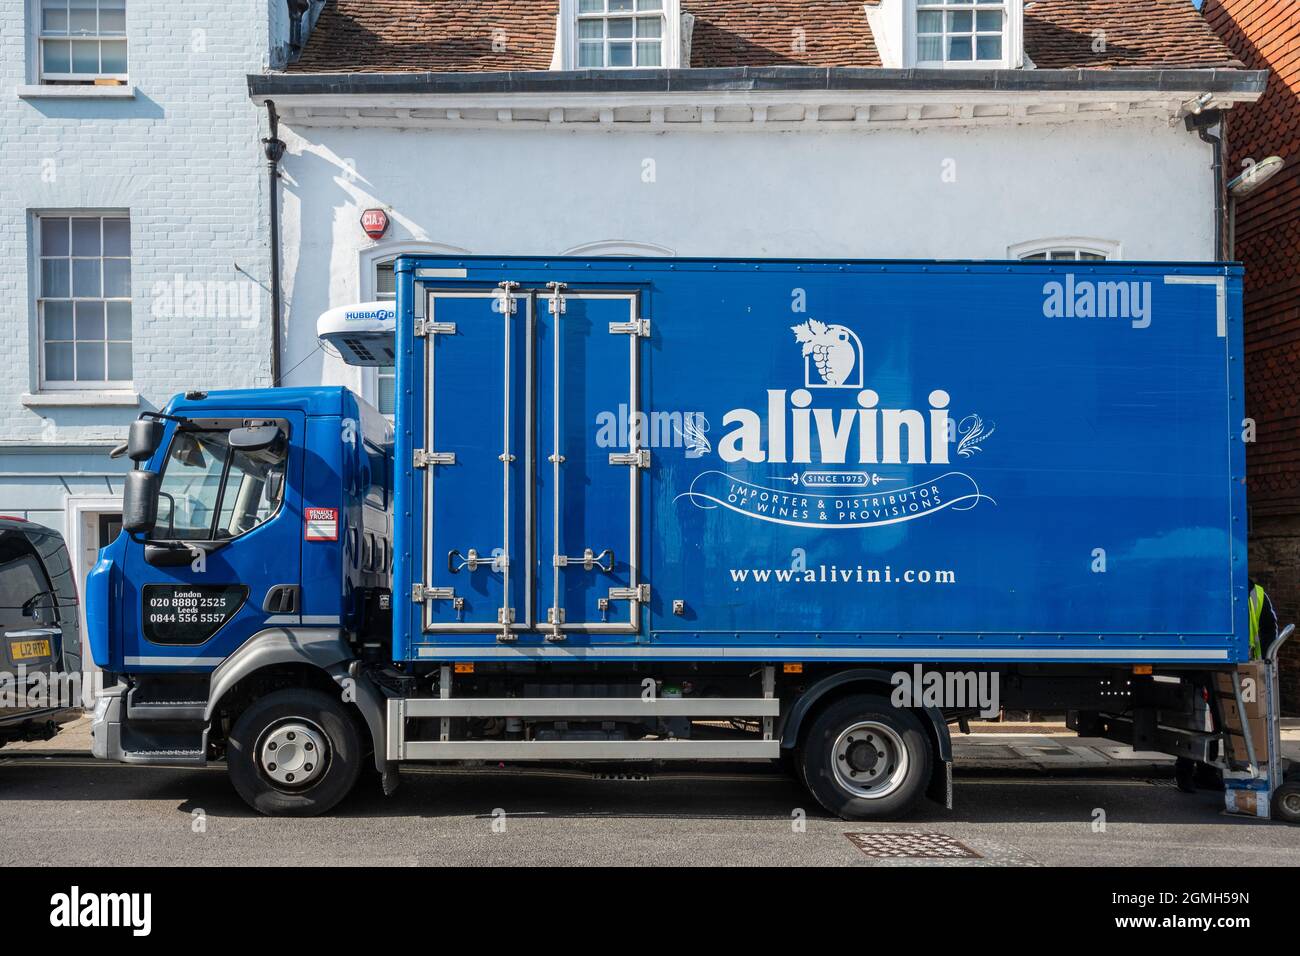 Alivini Lieferwagen auf der Straße, Großbritannien, geparkt. Alivini ist ein Unternehmen, das sich auf italienische Produkte, Speisen und Weine spezialisiert hat. Stockfoto